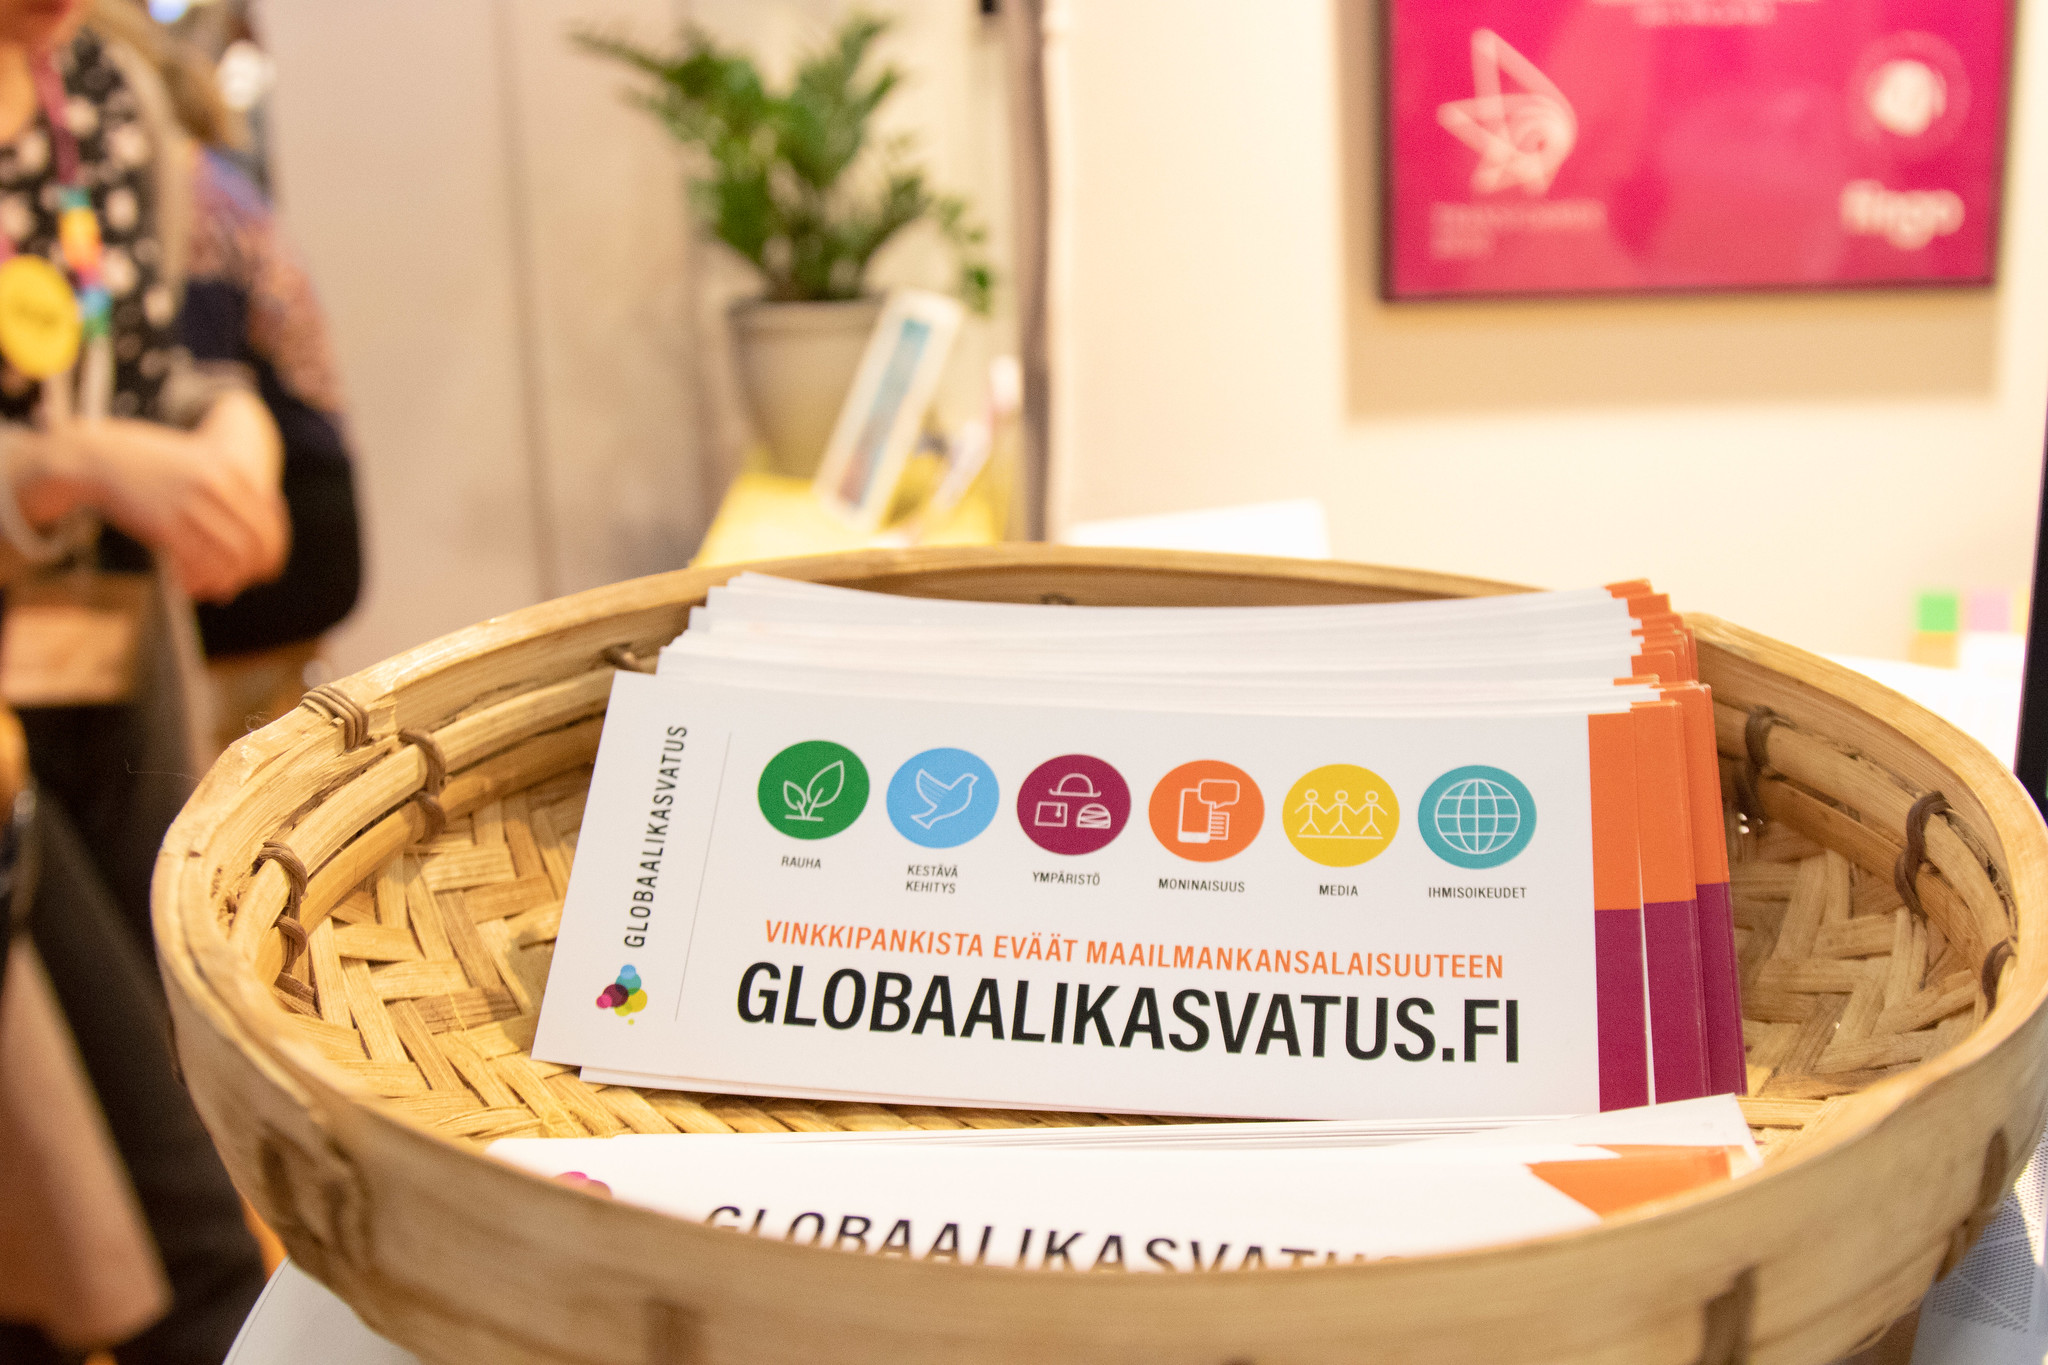 Globaalikasvatus.fi esitteitä pajukorissa messupöydällä.